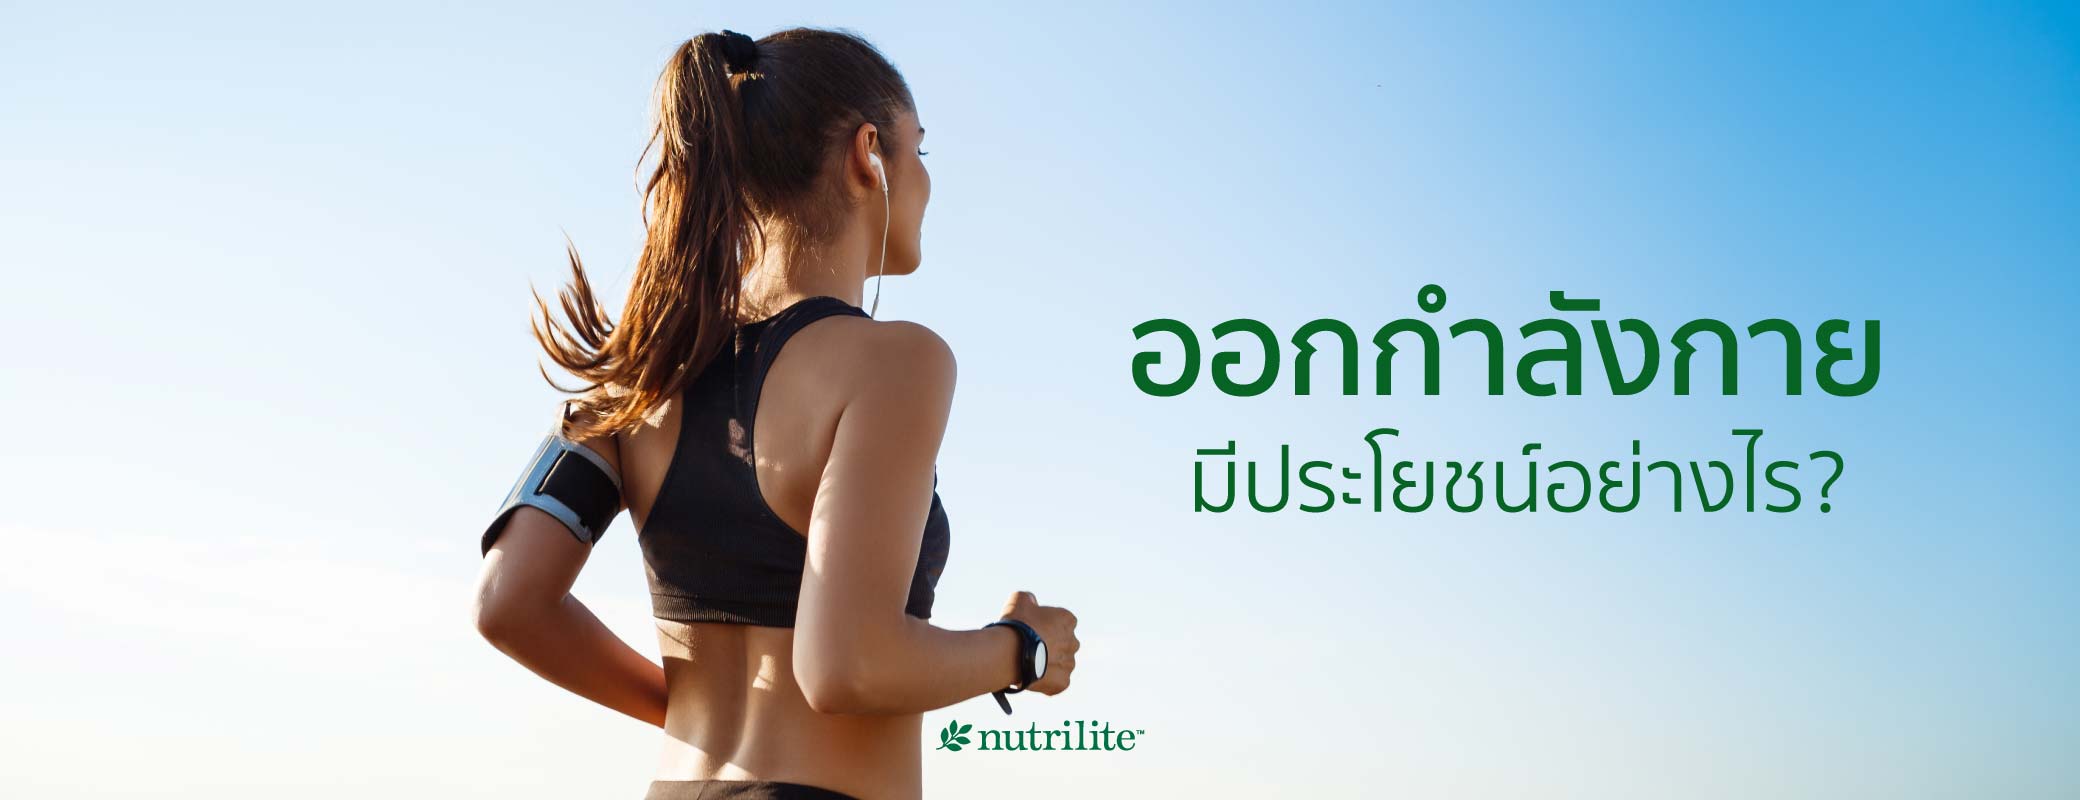 หลักการออกกำลังกาย Fitt มีอะไรบ้าง วิธีออกกำลังกายที่ถูกต้อง | Nutrilite™  Thailand